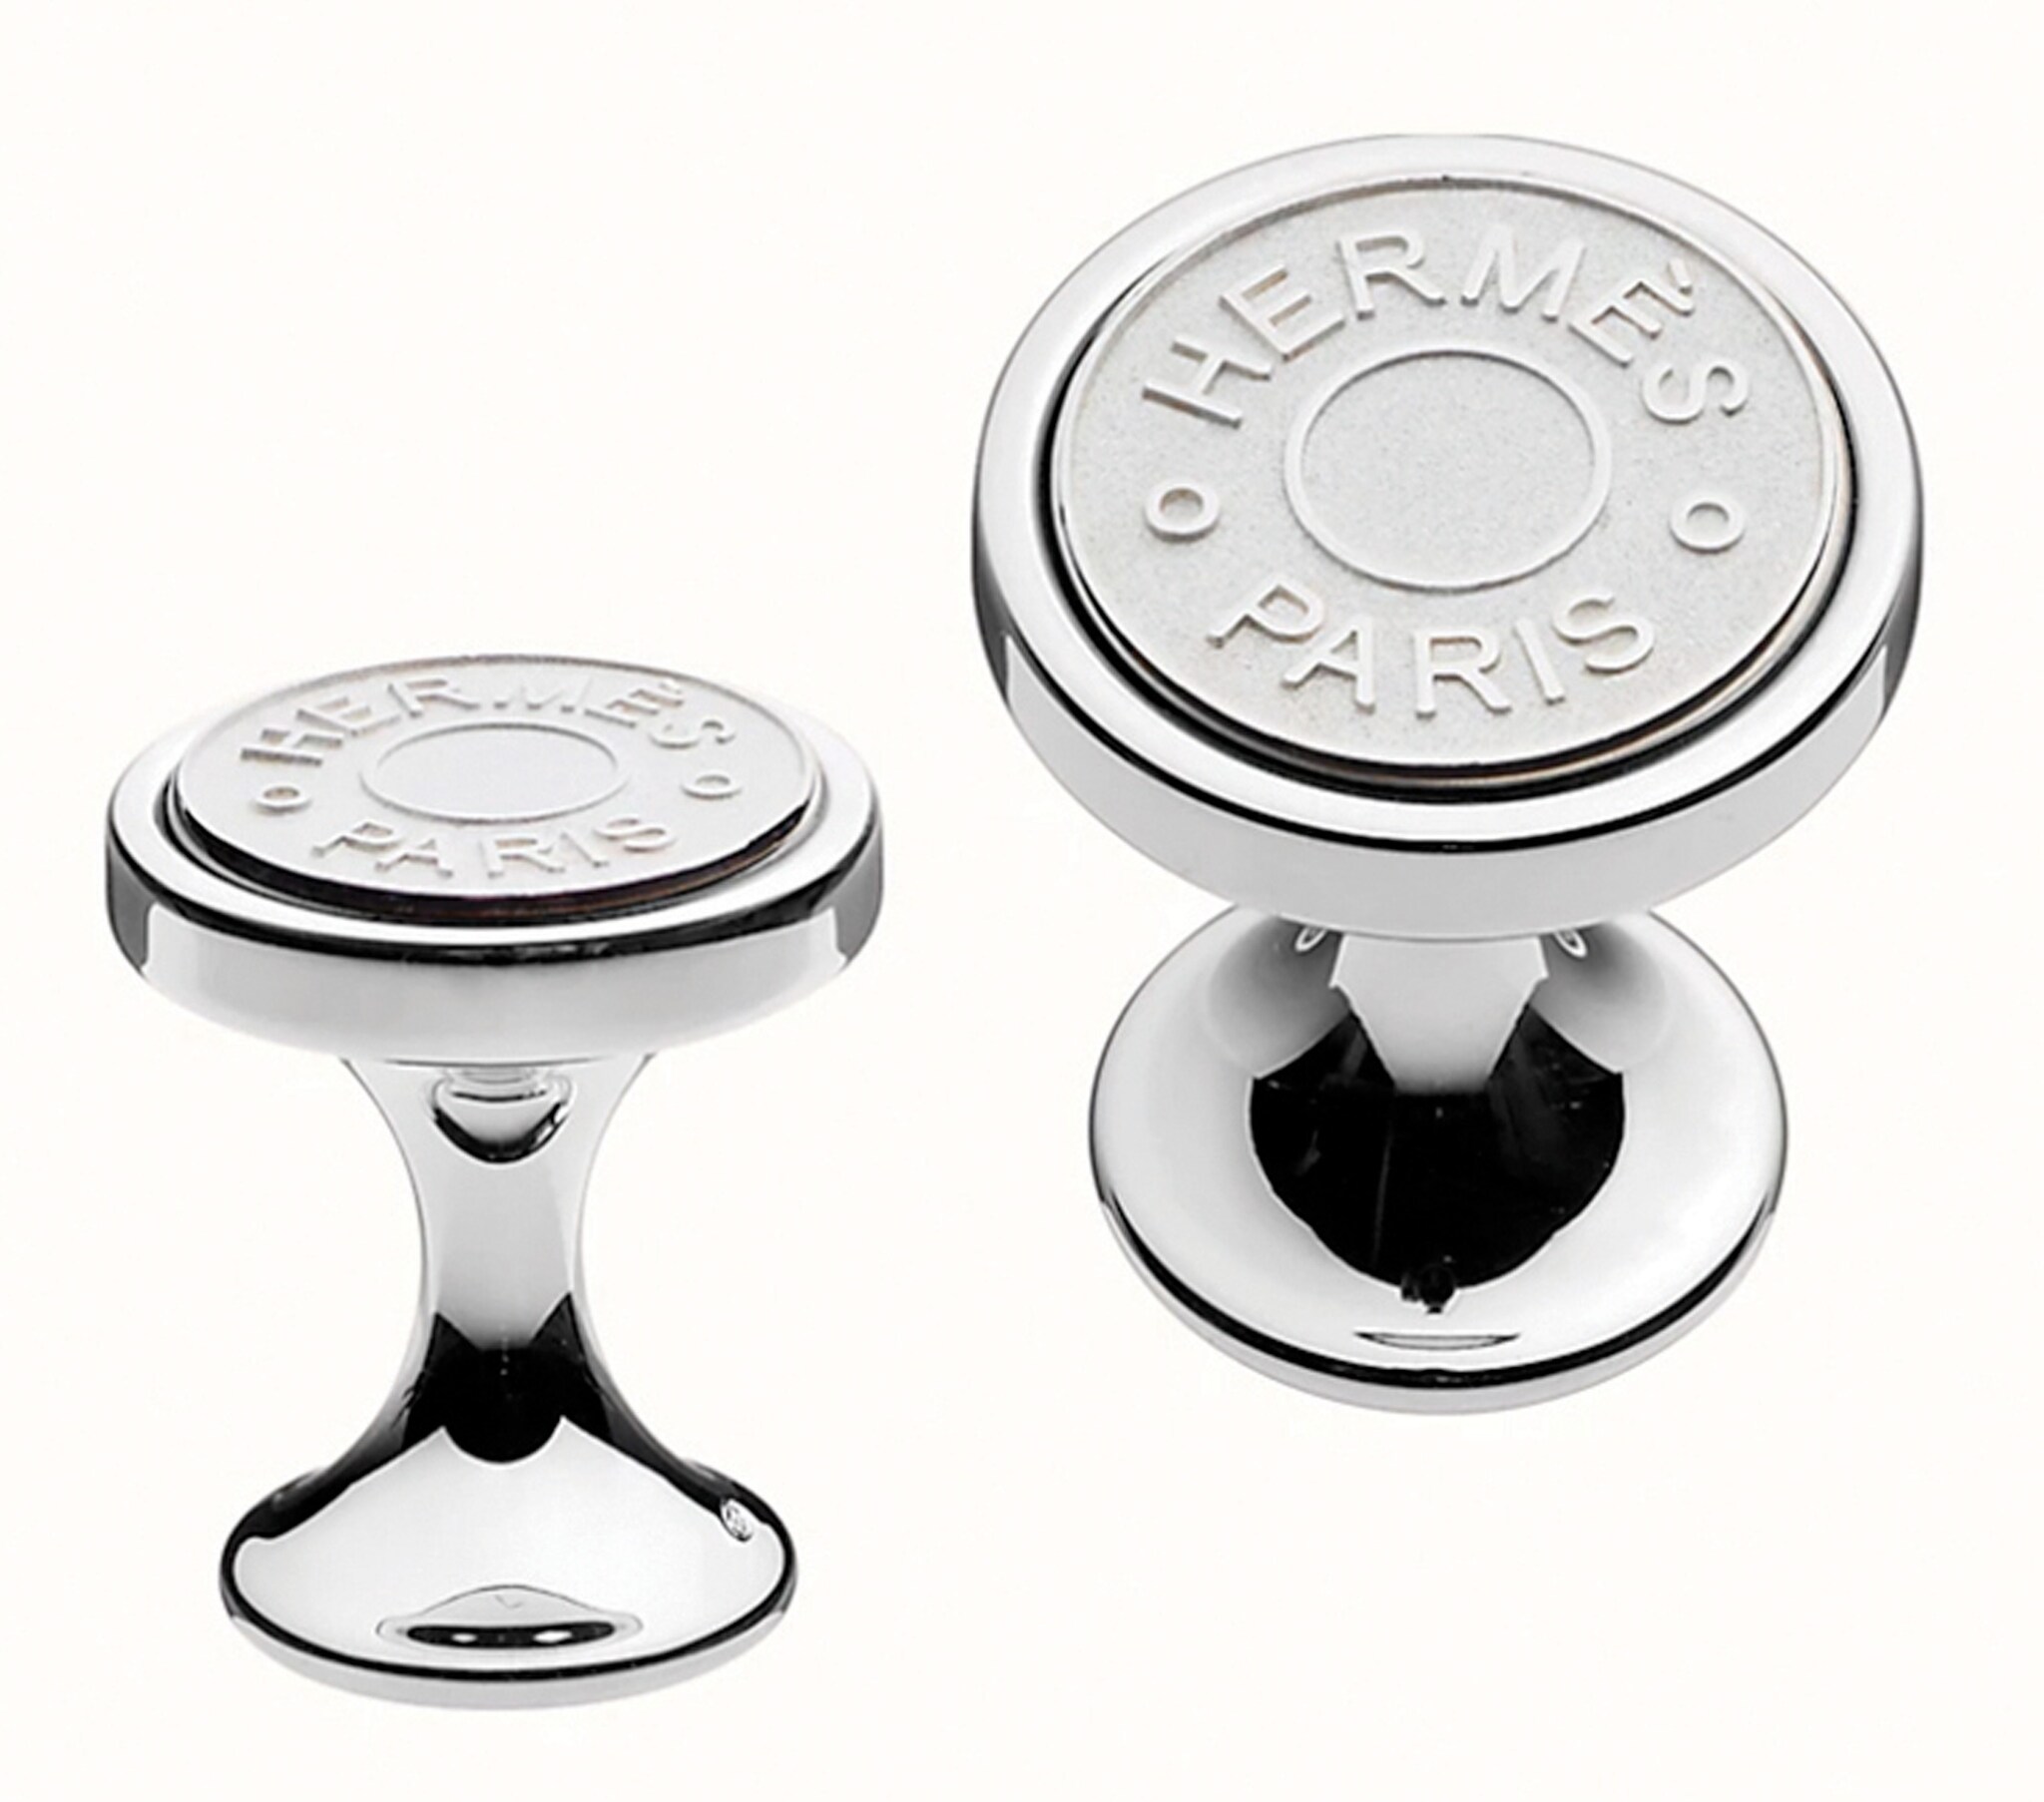 Hermès. A bottone in argento, con il logo della Maison a rilievo.